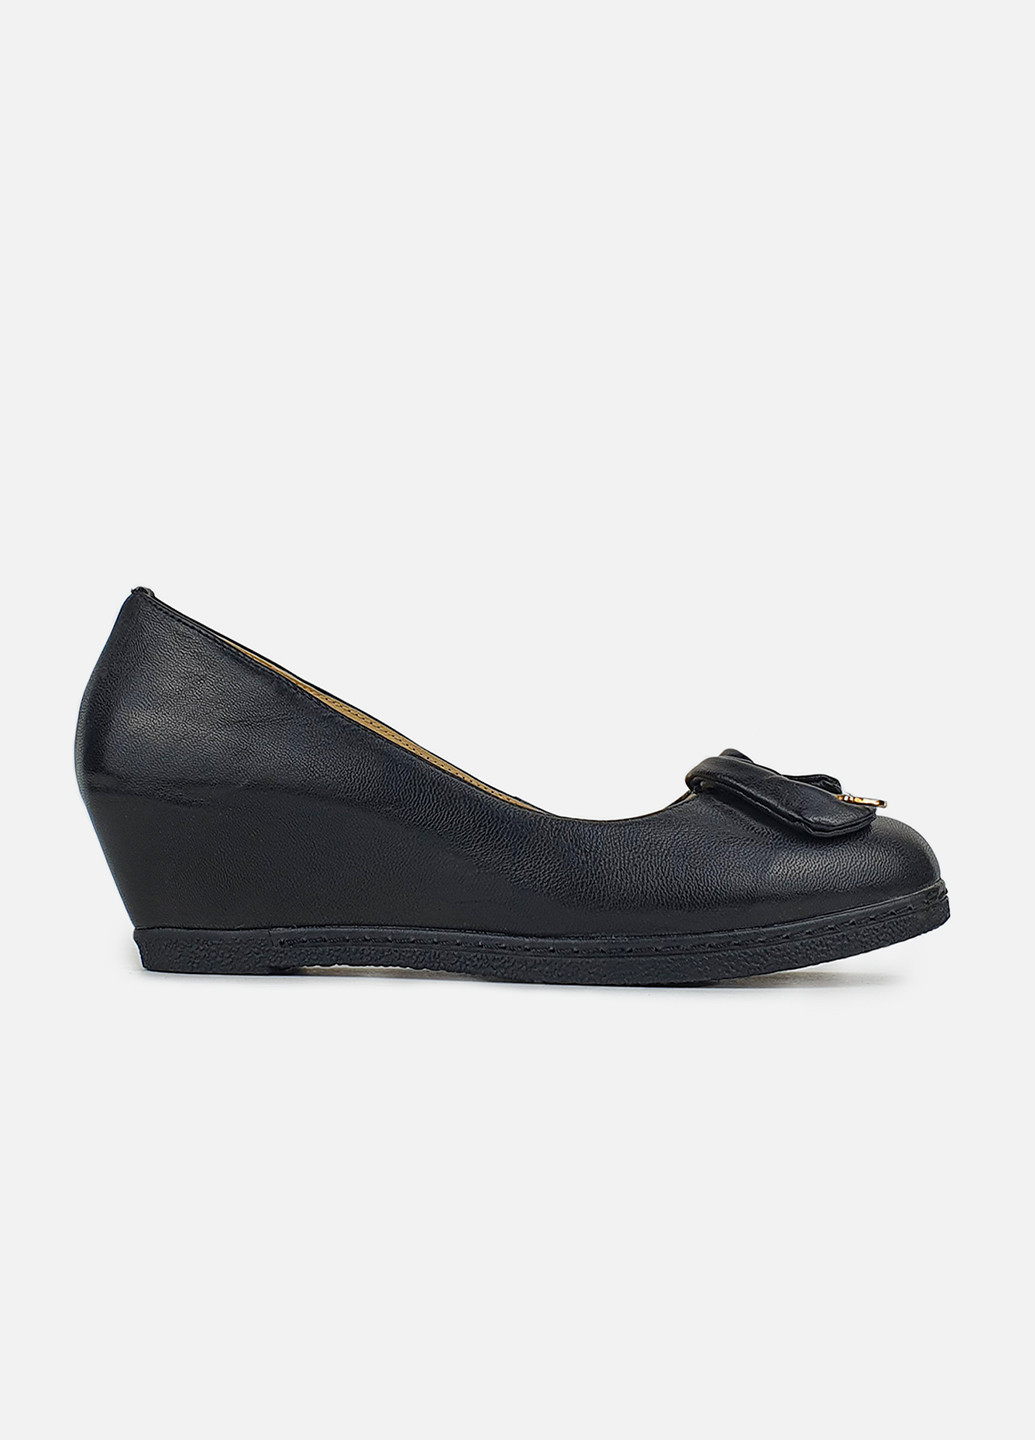 Жіночі туфлі на танкетці середньої шкіряні чорні Blue Puem туфли (252654840)